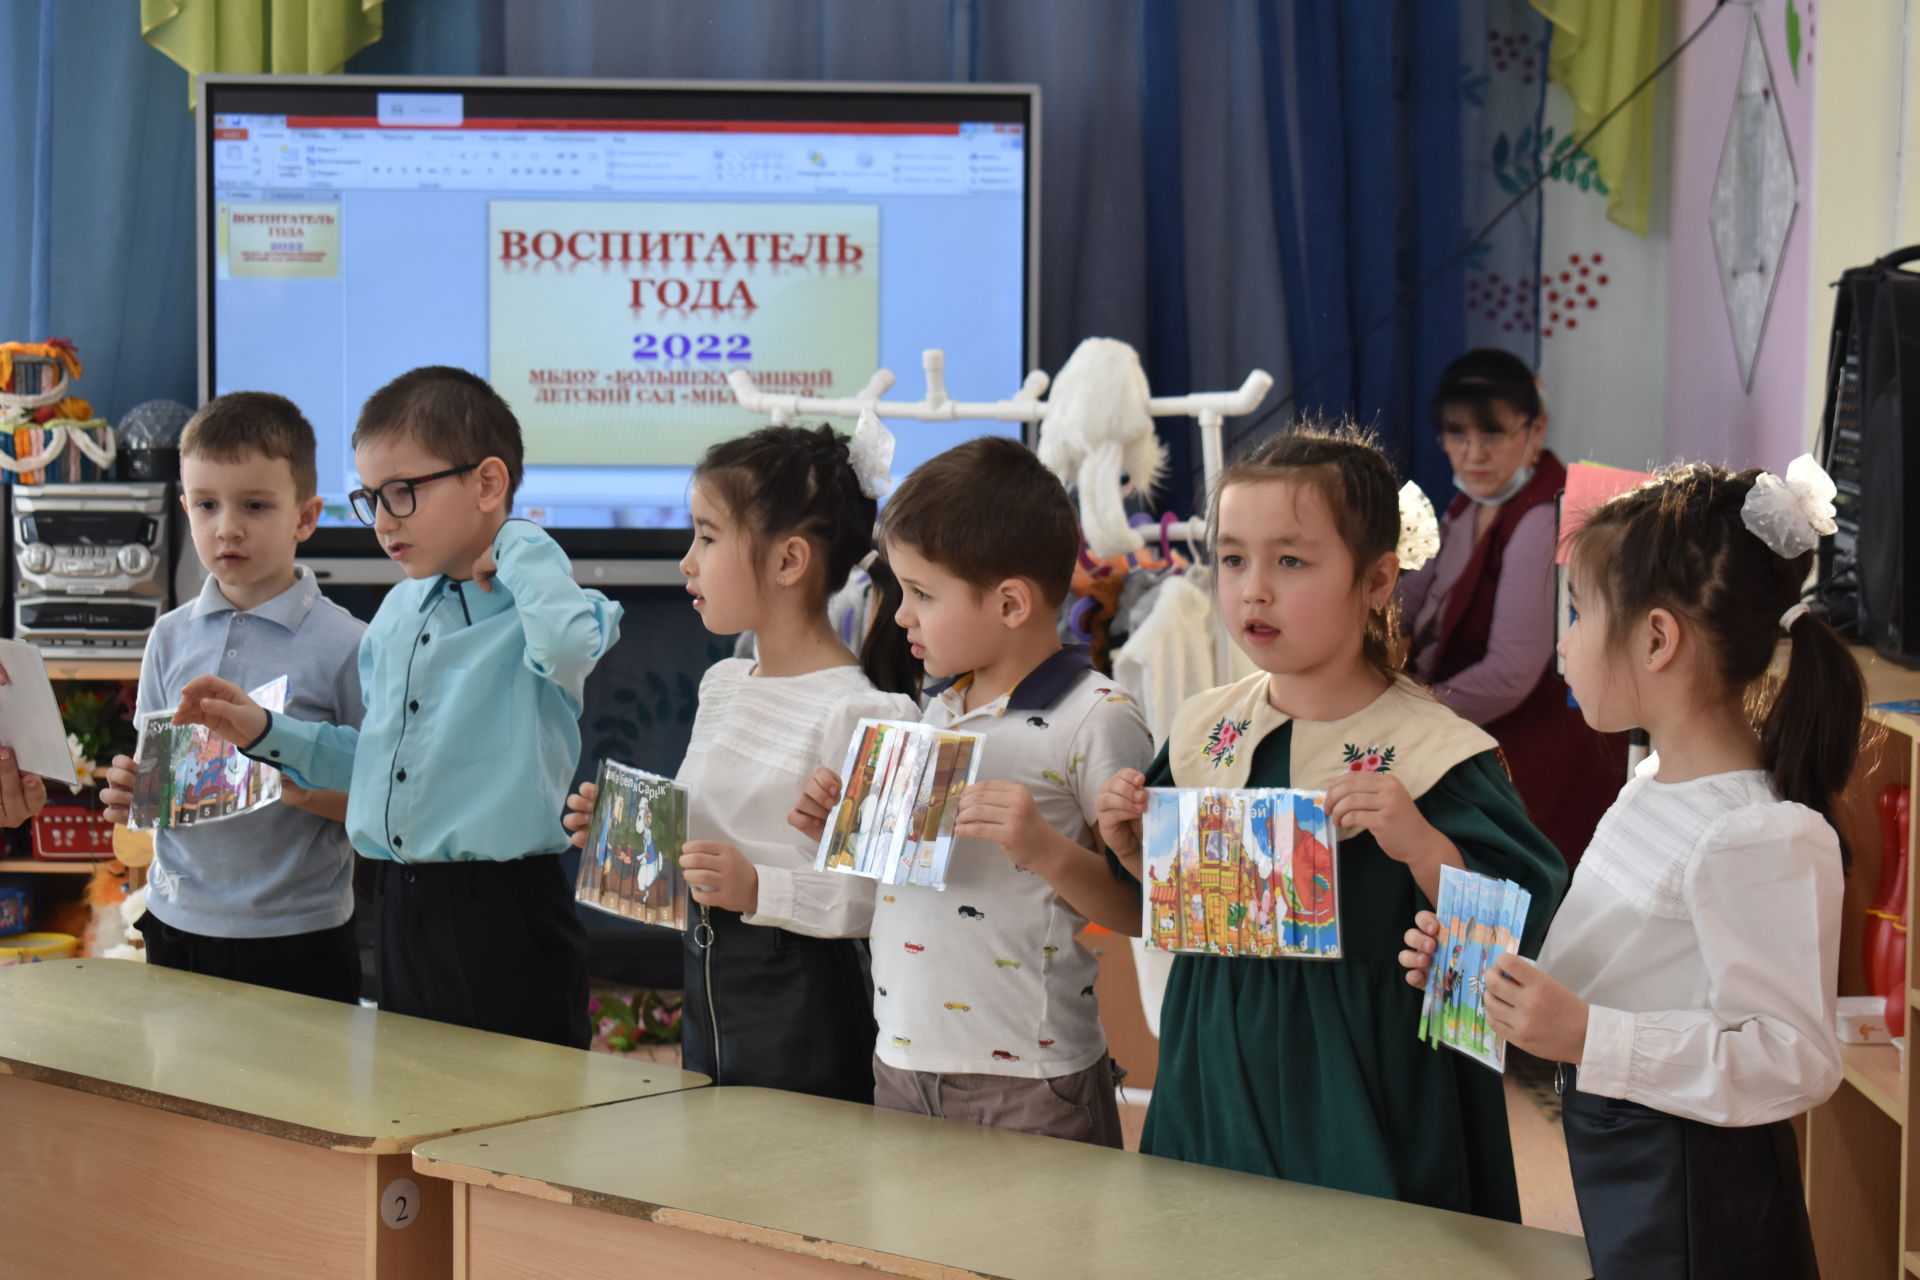 В Кайбицах прошел районный этап конкурса "Воспитатель года"